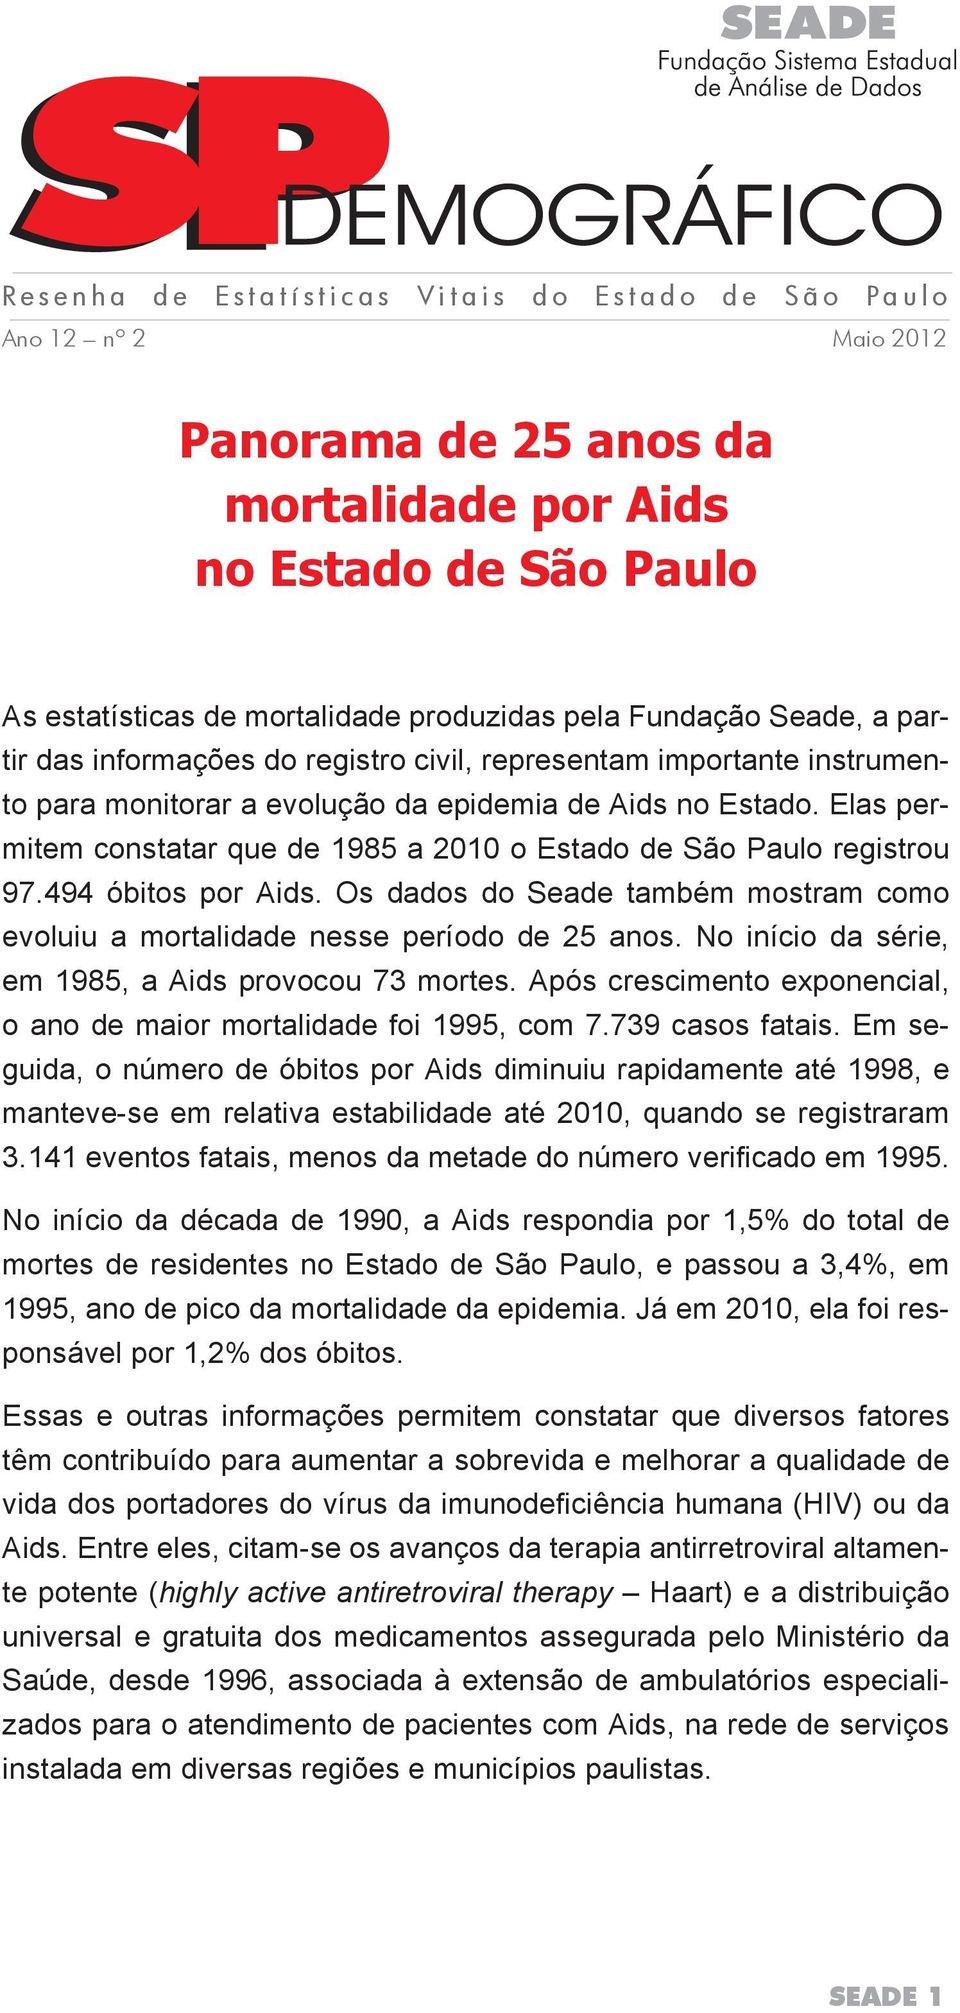 Elas permitem constatar que de 1985 a 2010 o Estado de São Paulo registrou 97.494 óbitos por Aids. Os dados do Seade também mostram como evoluiu a mortalidade nesse período de 25 anos.